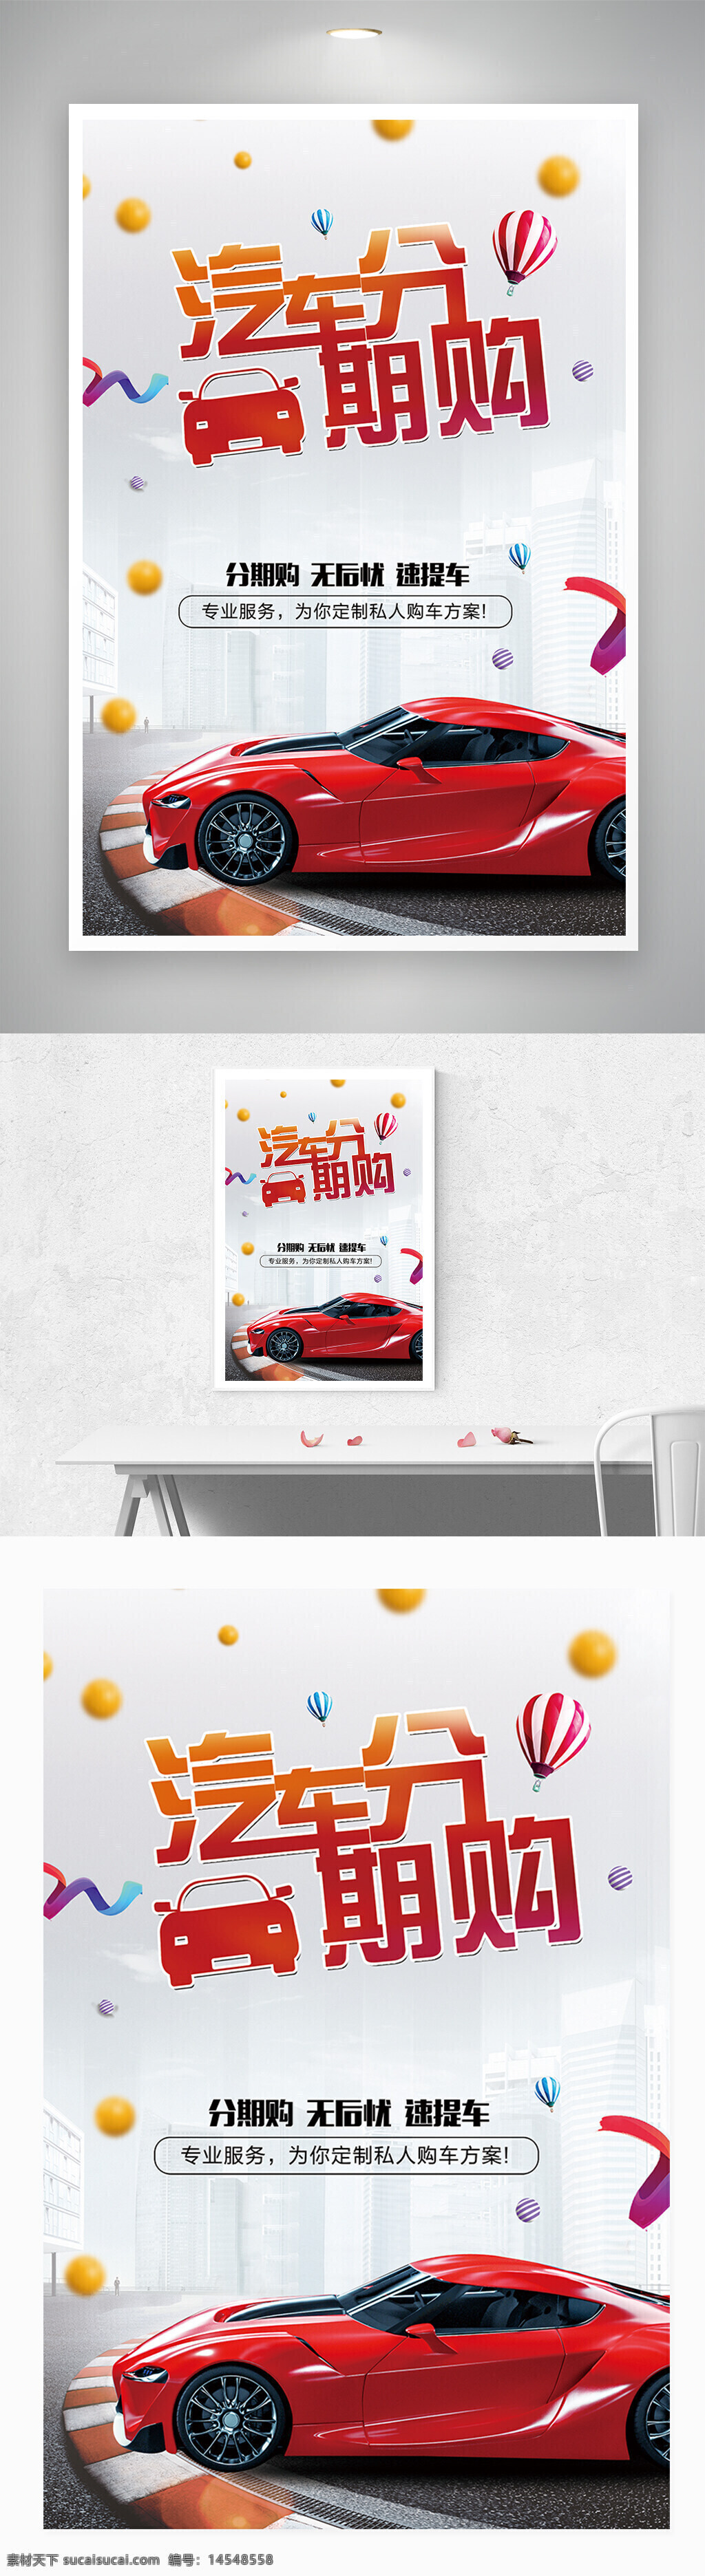 红色 汽车 分期购 宣传 海报